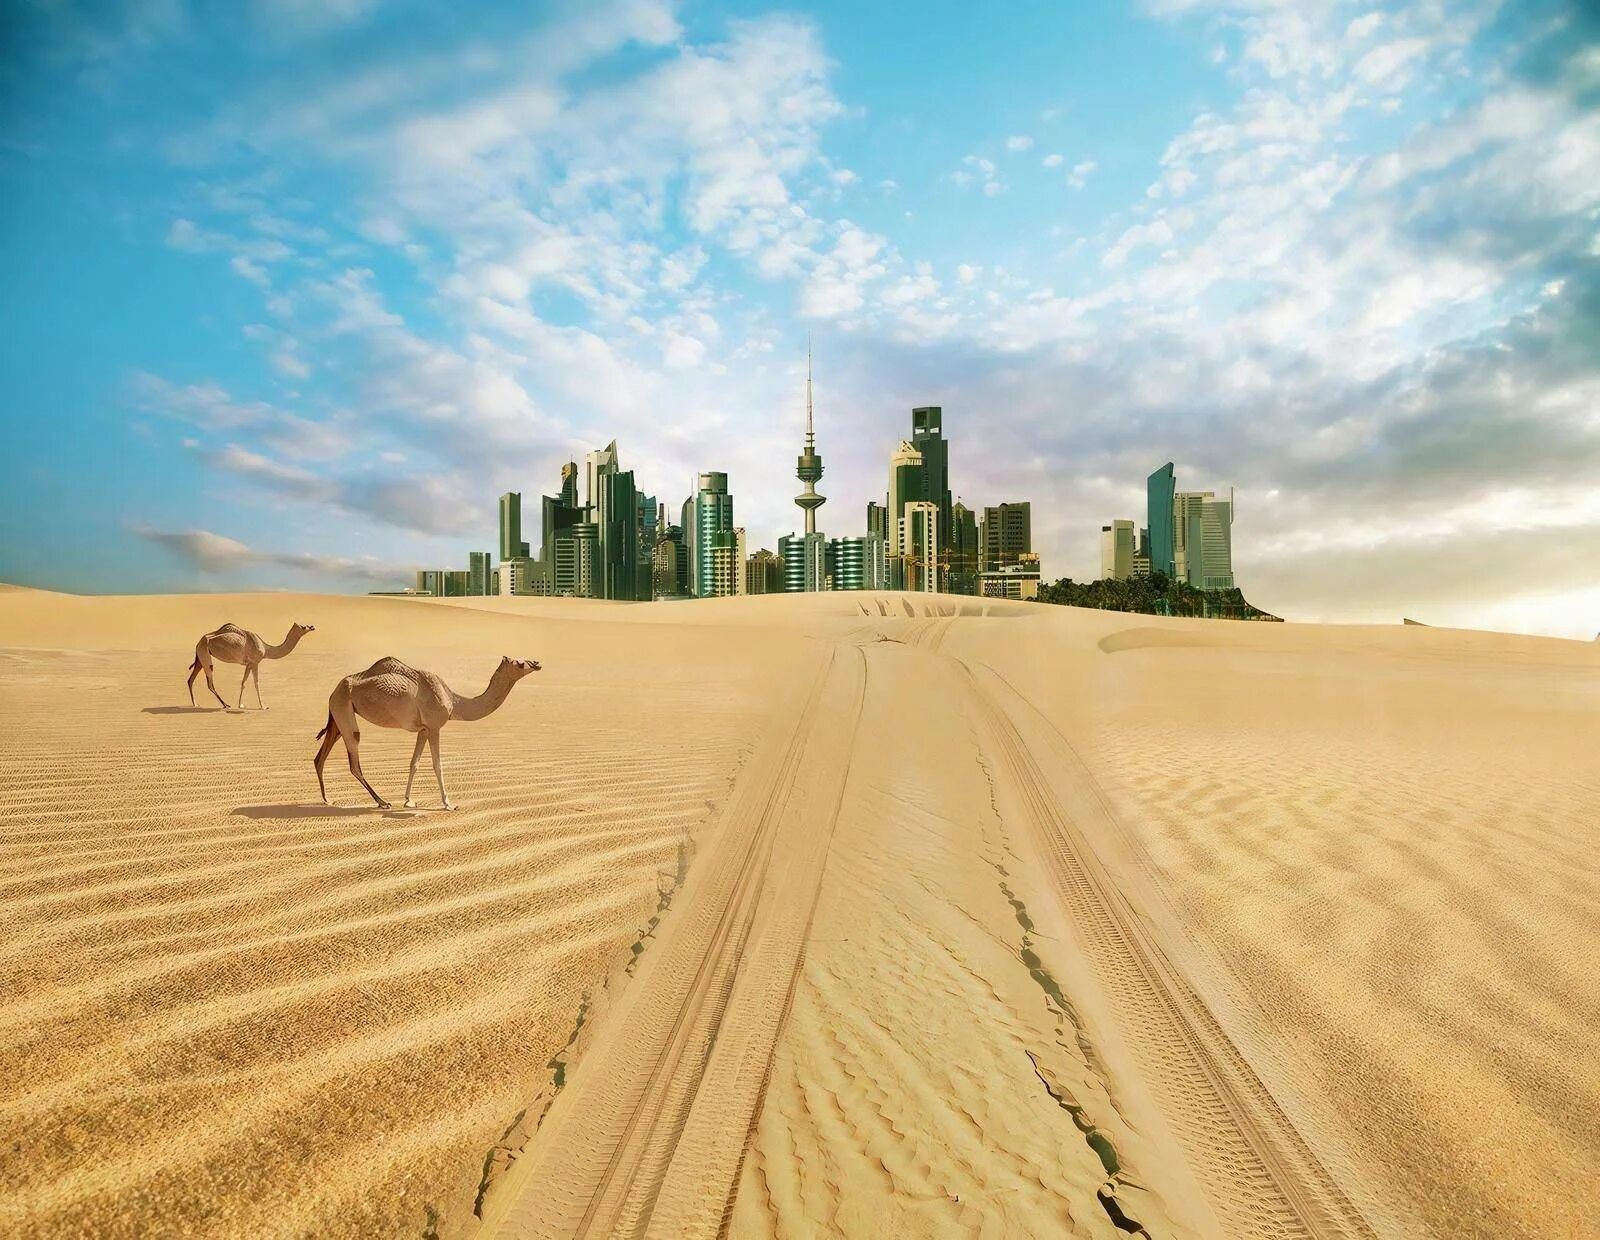 Uae zone. Дубай пустыня. Сулайбия Кувейт. Пустыня Абу Даби. Аравийская пустыня ОАЭ.